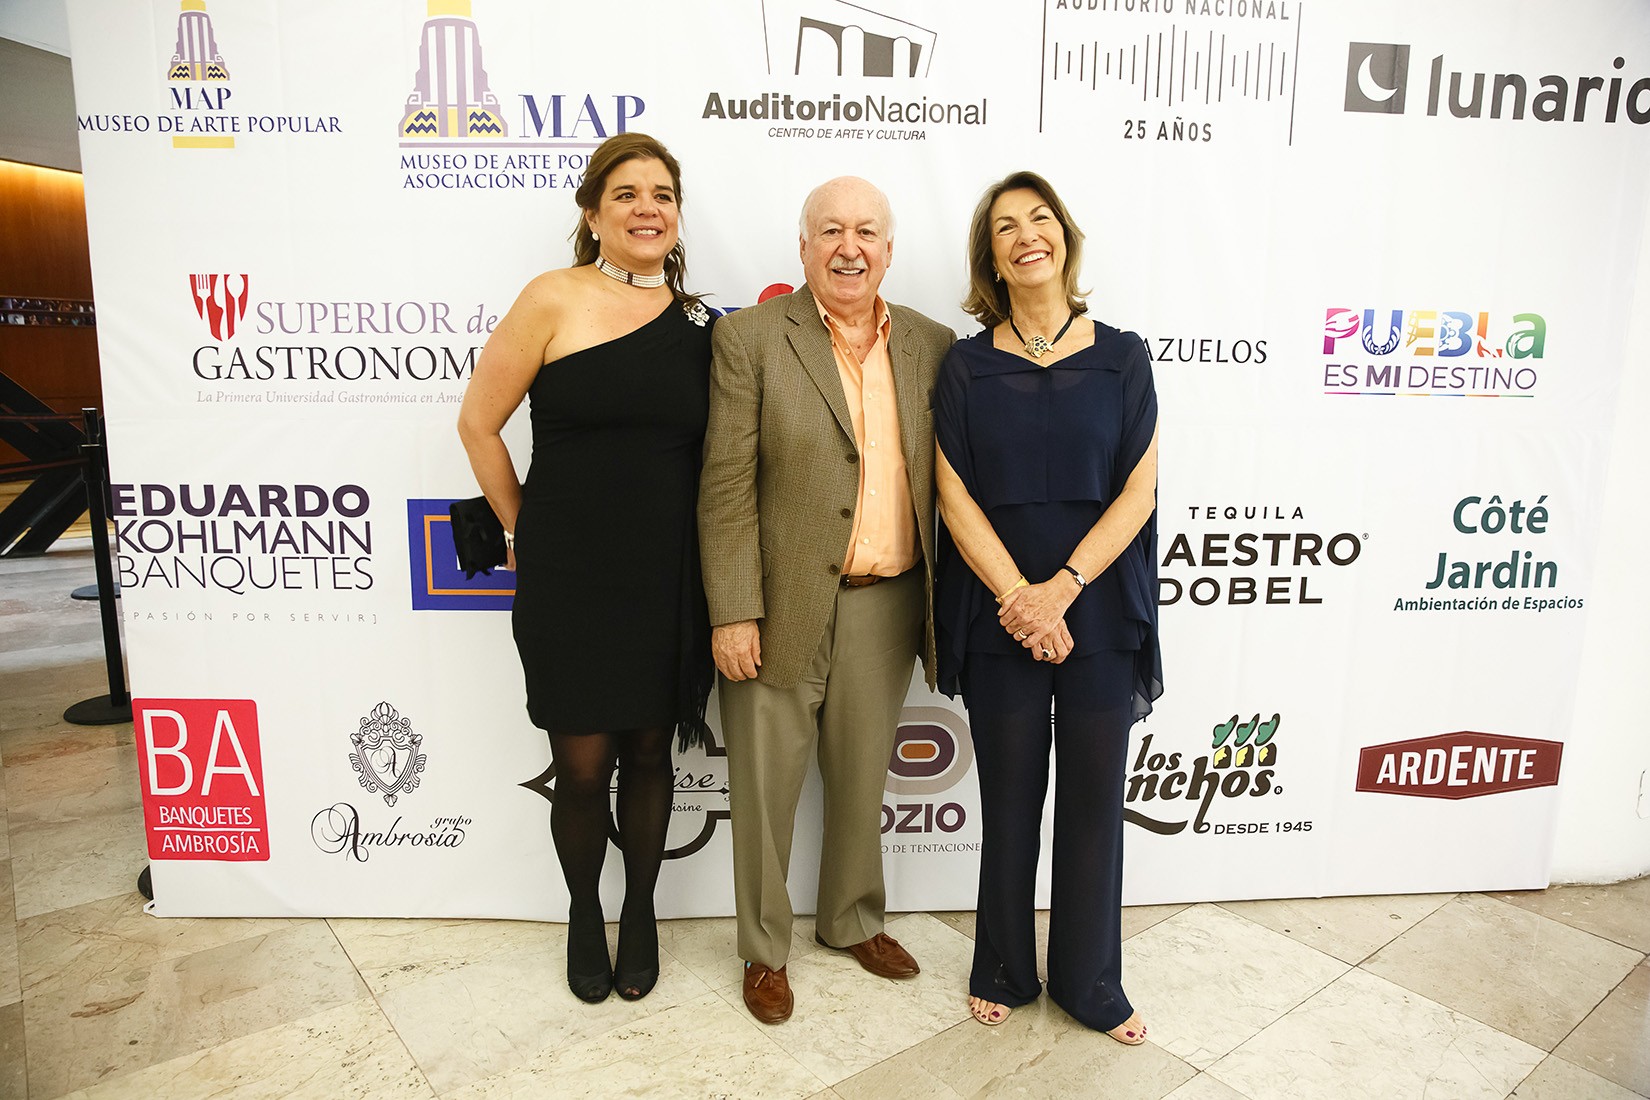 Sonya Santos, Bruno Newman y Marie Therese Hermand de Arango en el Lunario para el concierto de Fernando de la Mora. (Foto: RSVP).